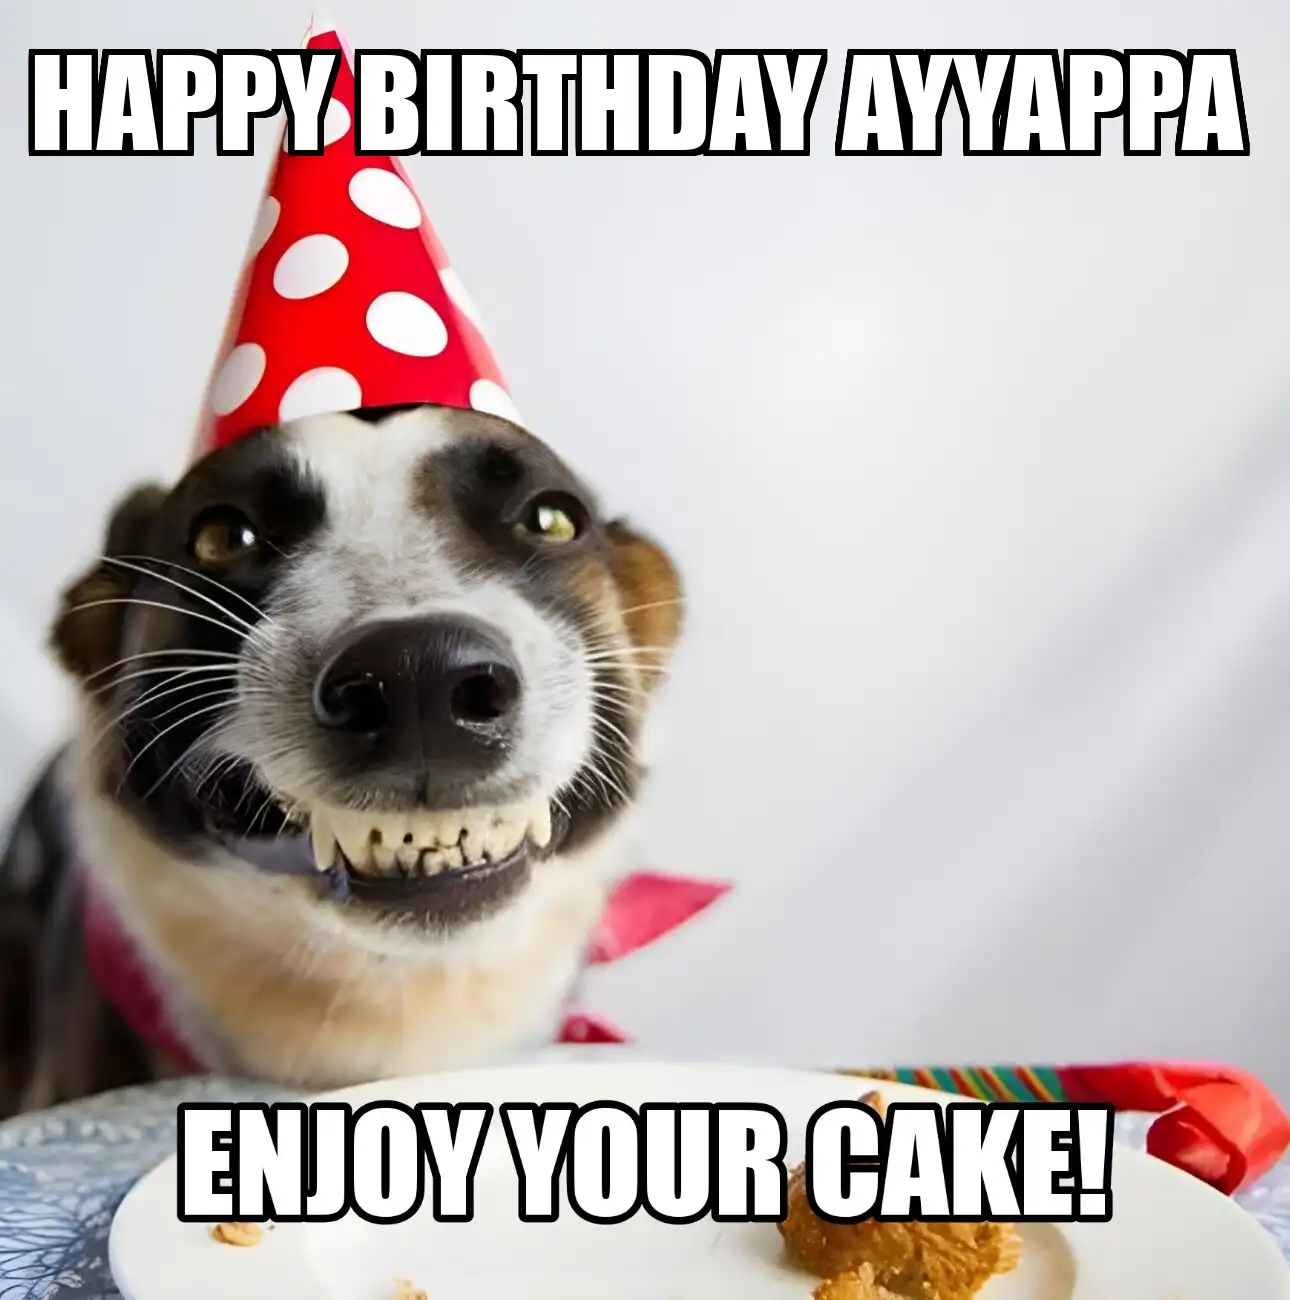 Happy Birthday Ayyappa Enjoy Your Cake Dog Meme